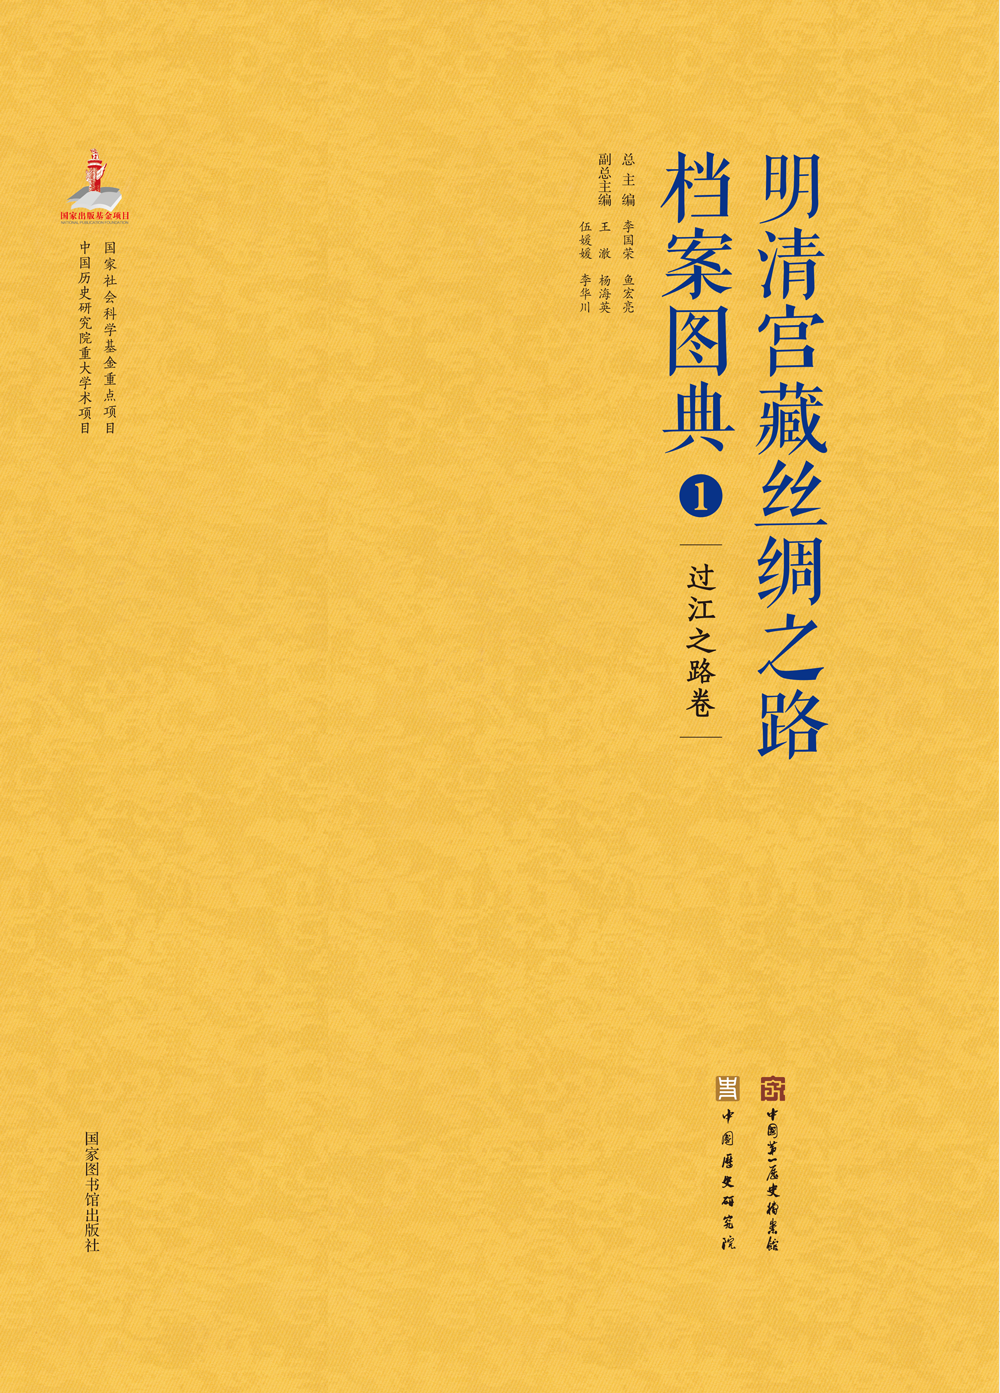 明清宫藏丝绸之路档案图典（全八册））